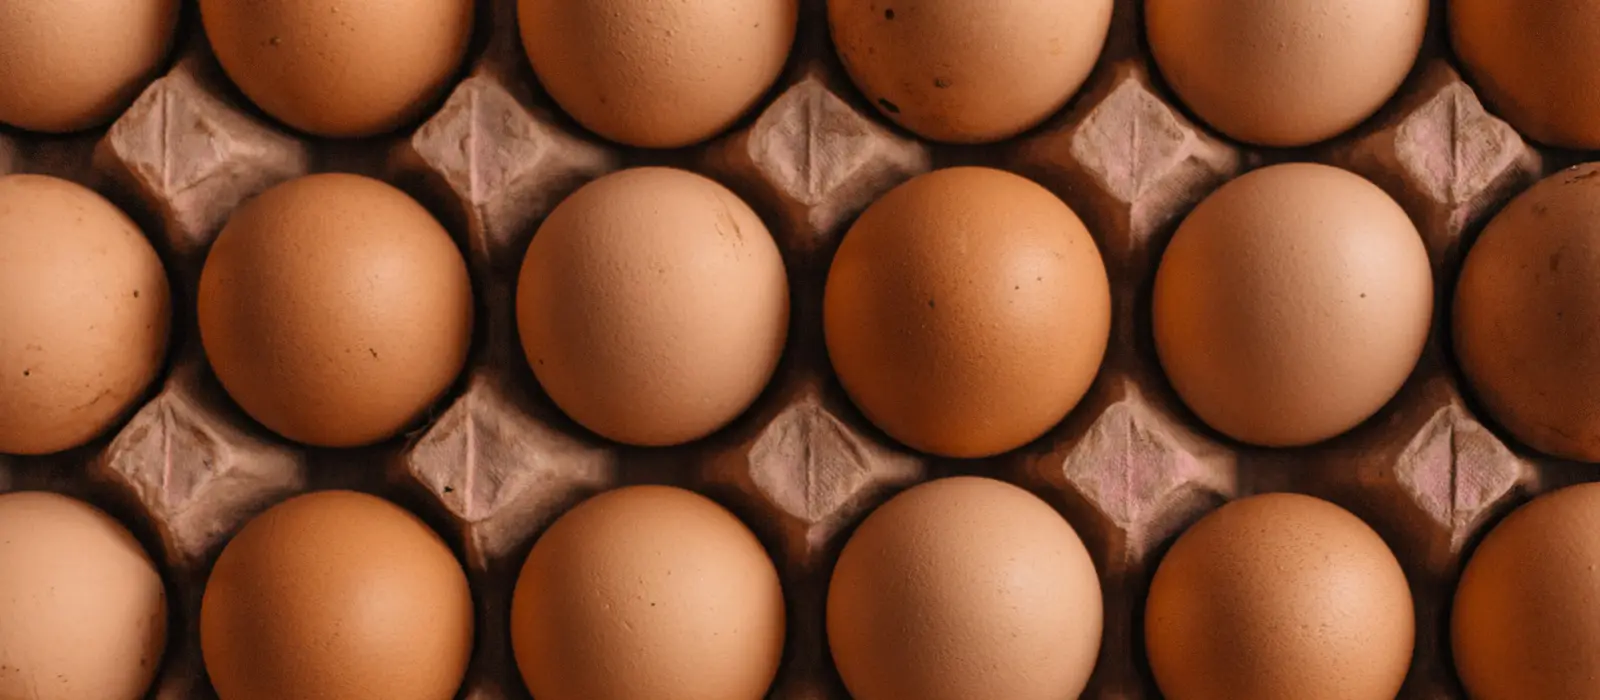 Rows of chicken eggs in an egg carton